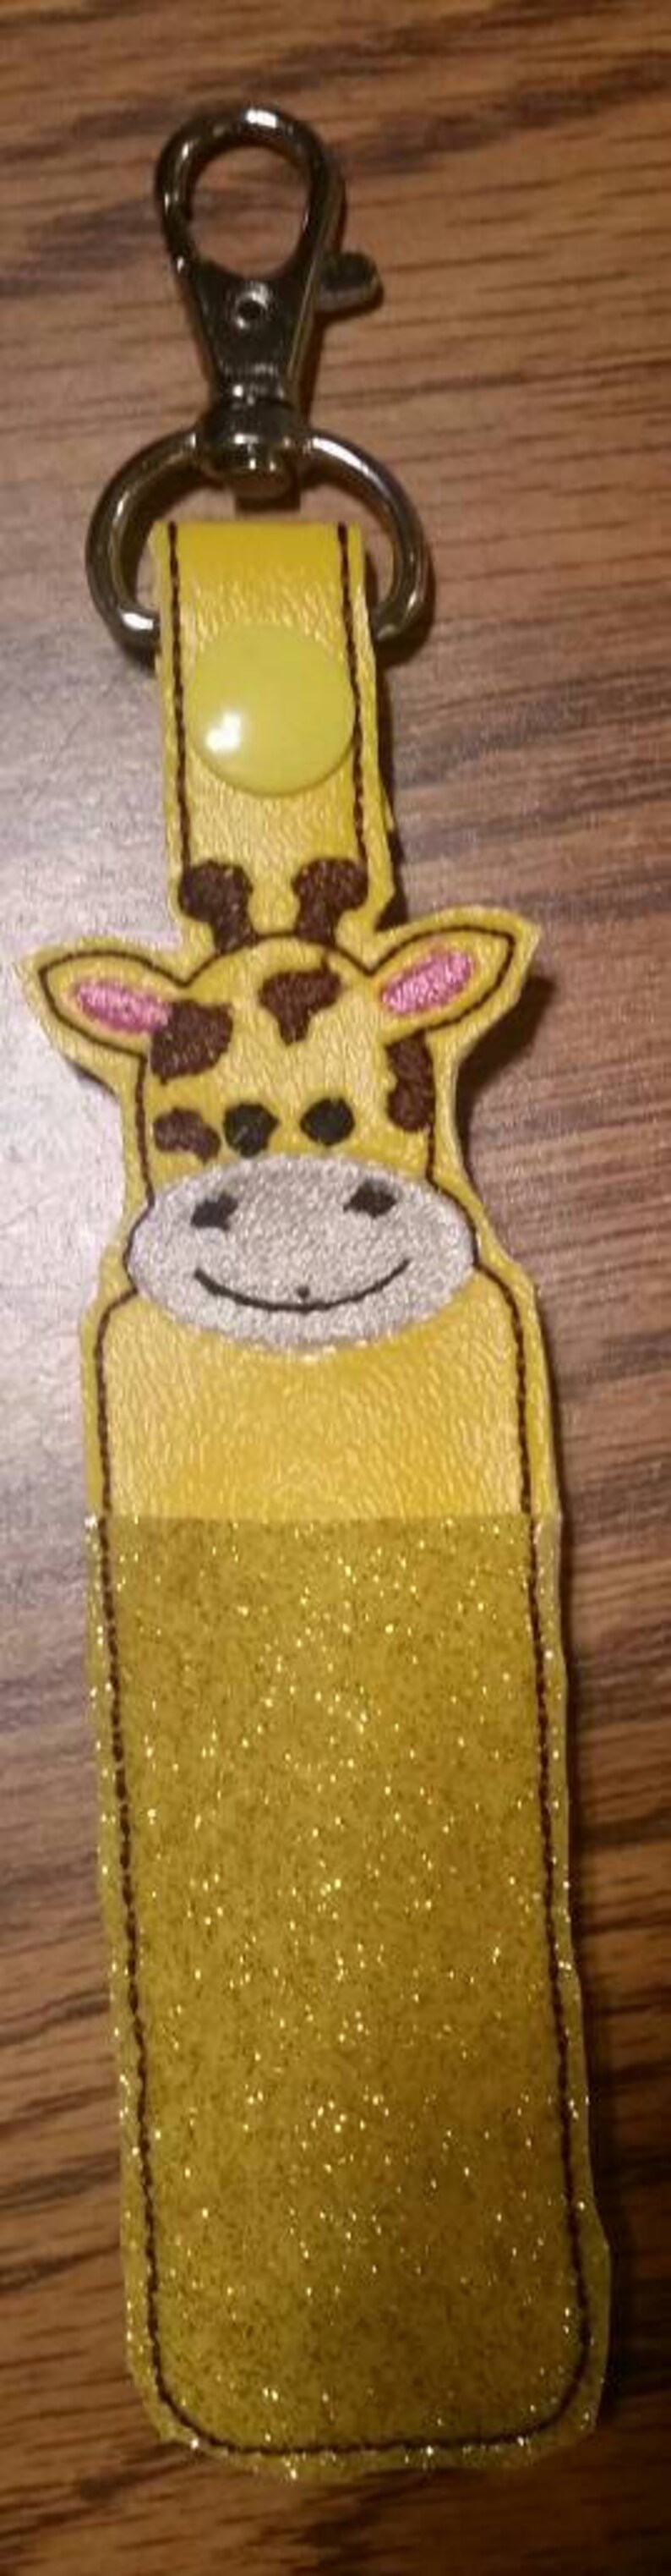 Lip balm animal de zoo girafe porte-clé de Noël cadeau de bas les lèvres gercées confortable de baume pour les lèvres lecteur flash porte image 2